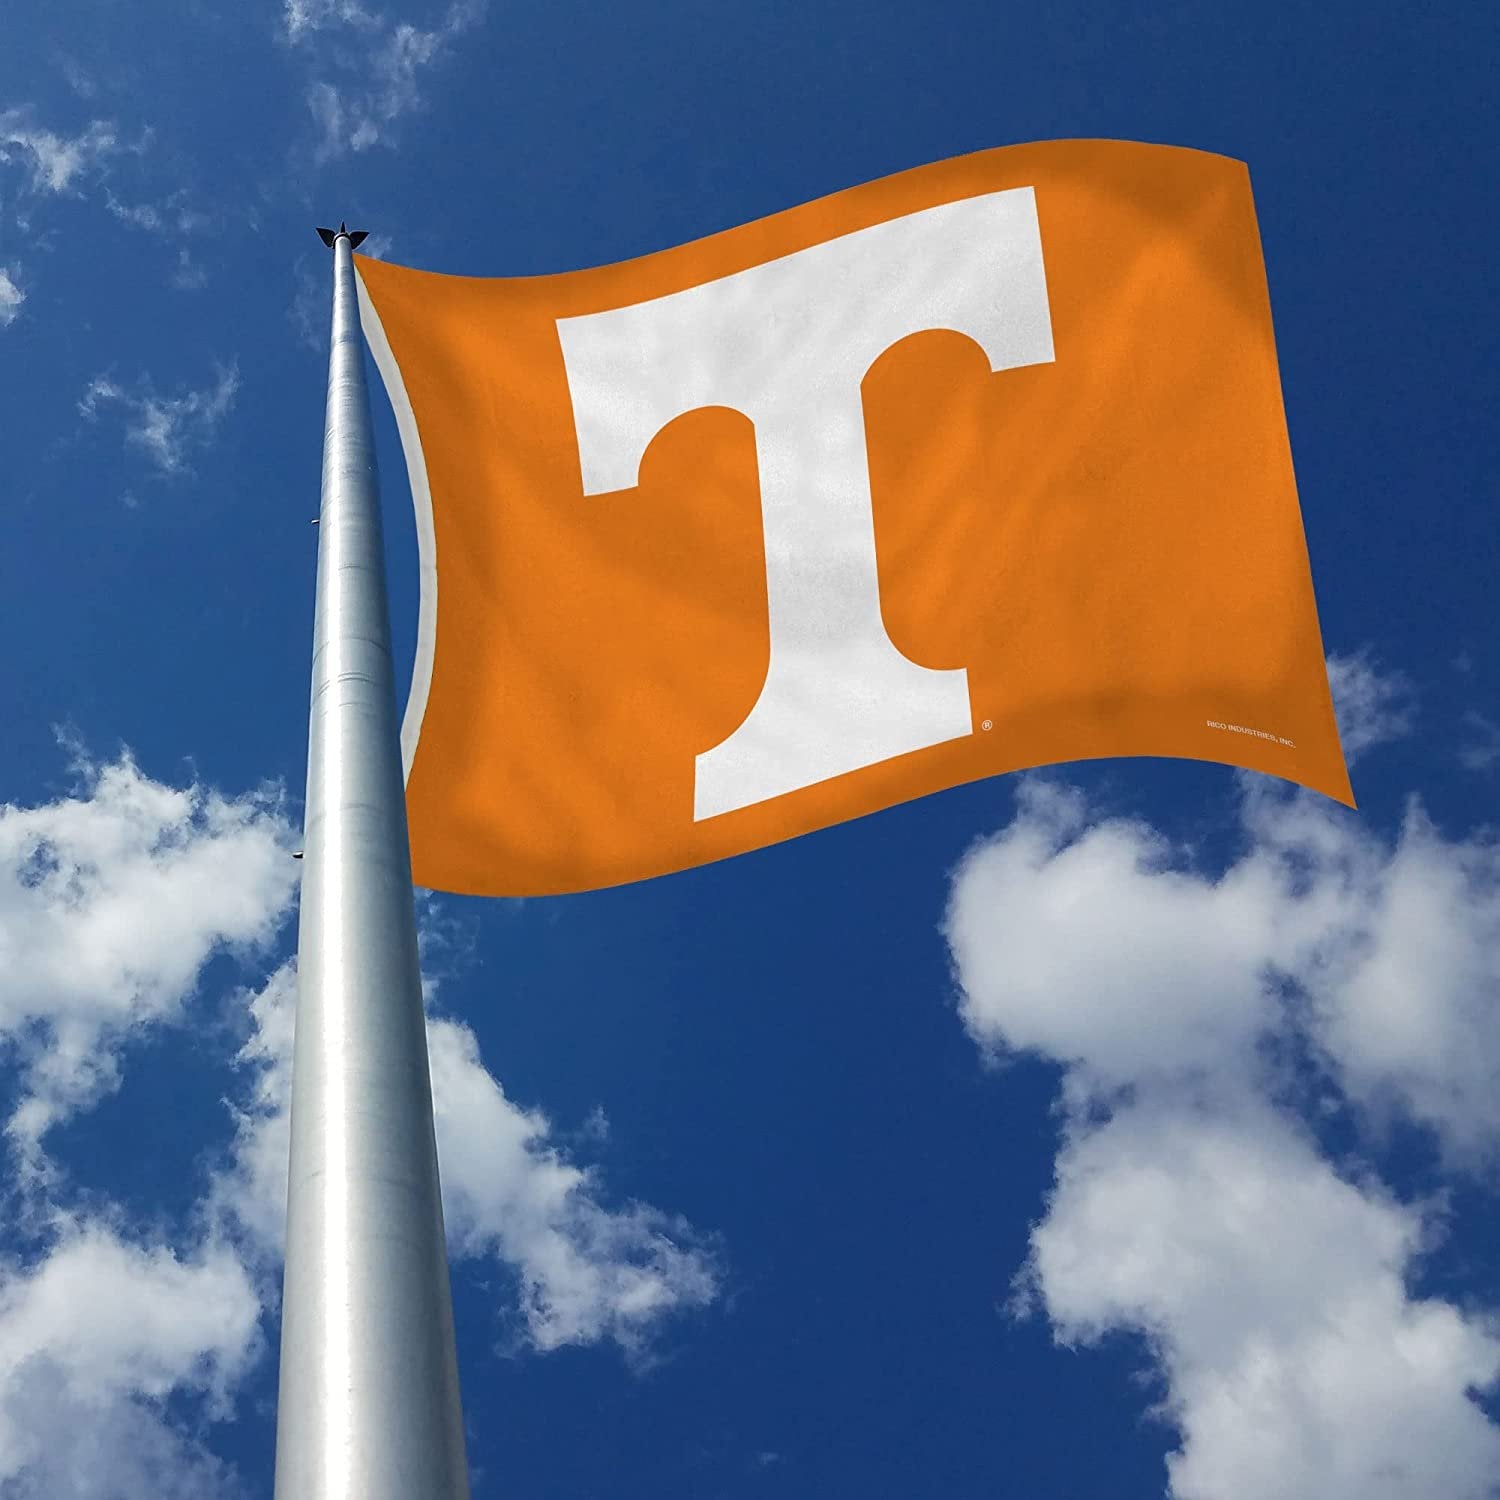 University of Tennessee Volunteers 3x5 Foot Flag Banner Metal Grommets Indoor Outdoor